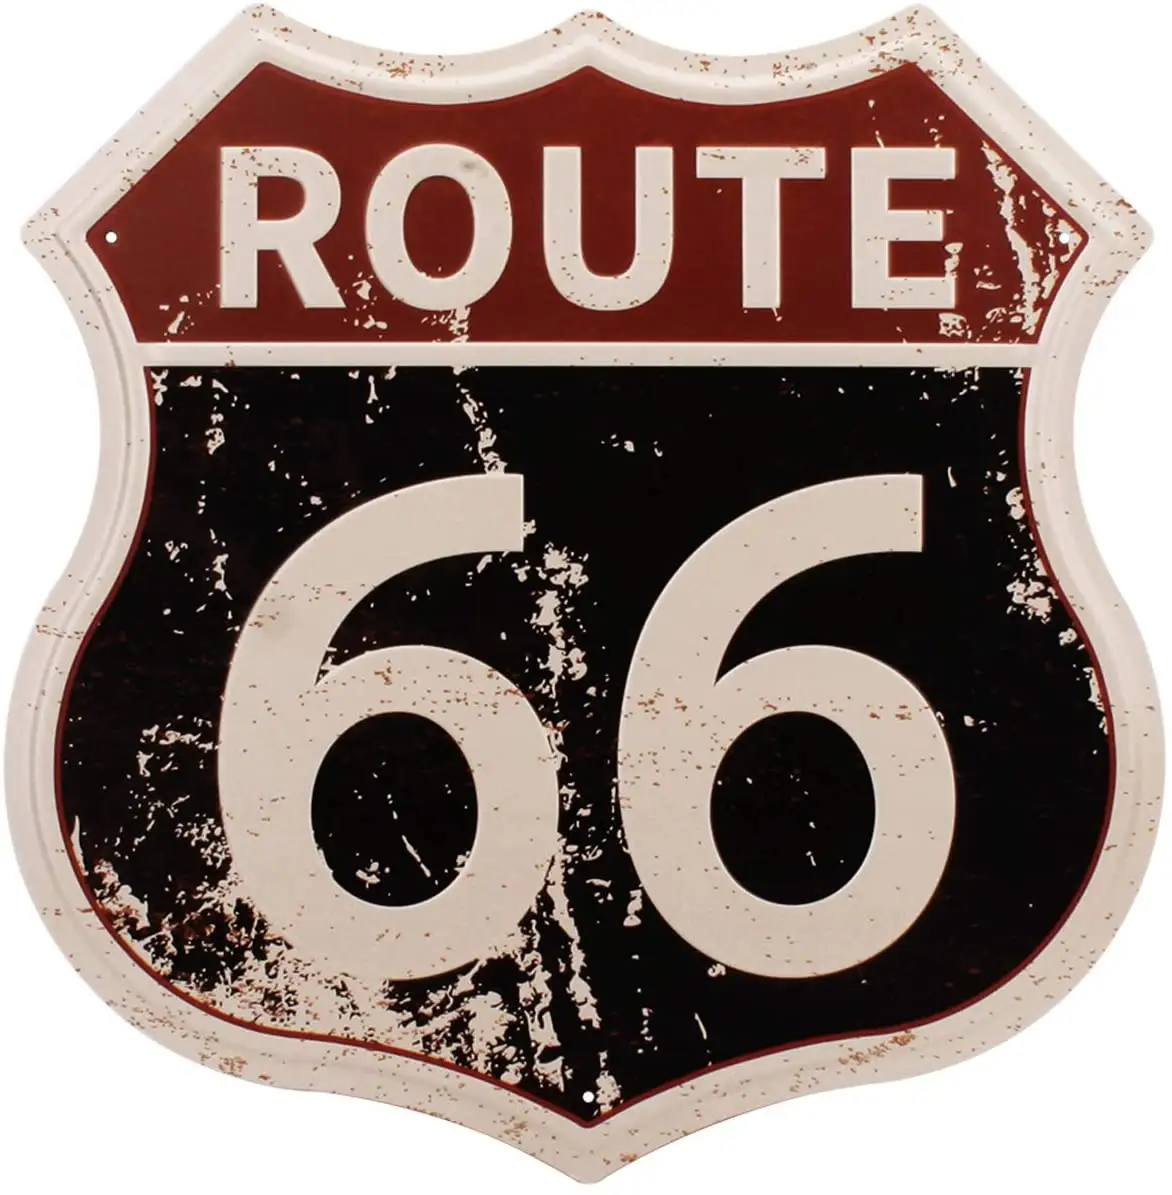 Route 66ป้าย/ป้ายร้านโลหะแนววินเทจ/ป้ายสัญลักษณ์ดีบุกถนนทางสูง US 66สำหรับตกแต่งผนังบ้านและโรงรถ12X12นิ้ว